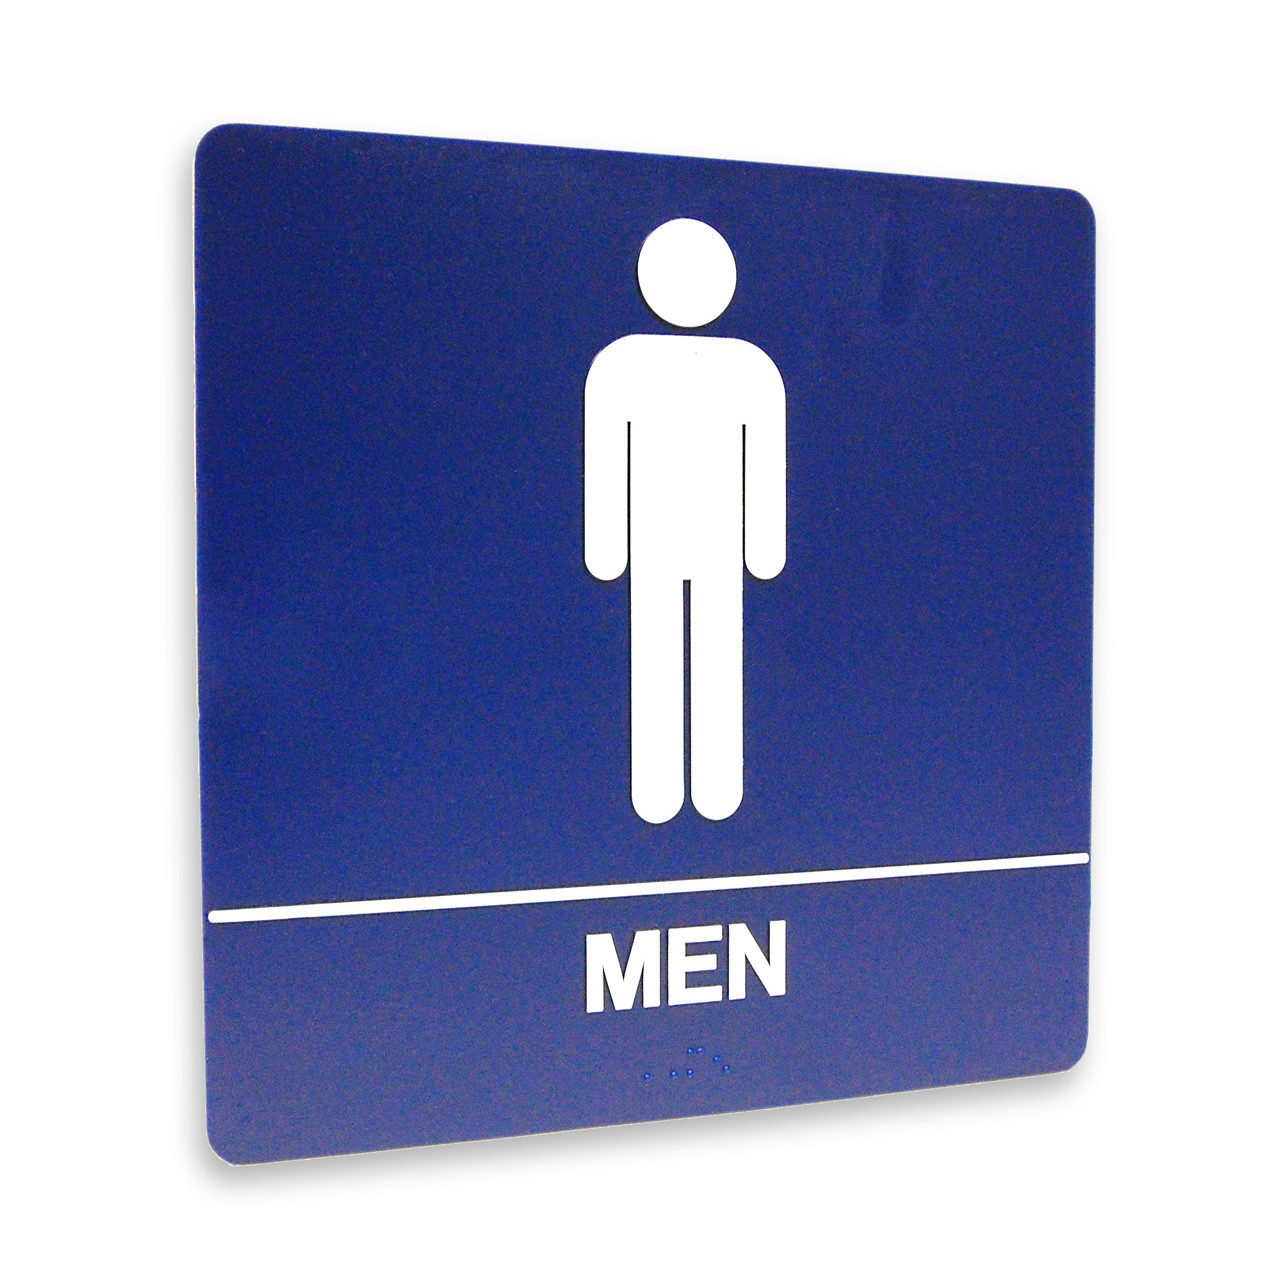 mens-restroom-sign-clip-art-library